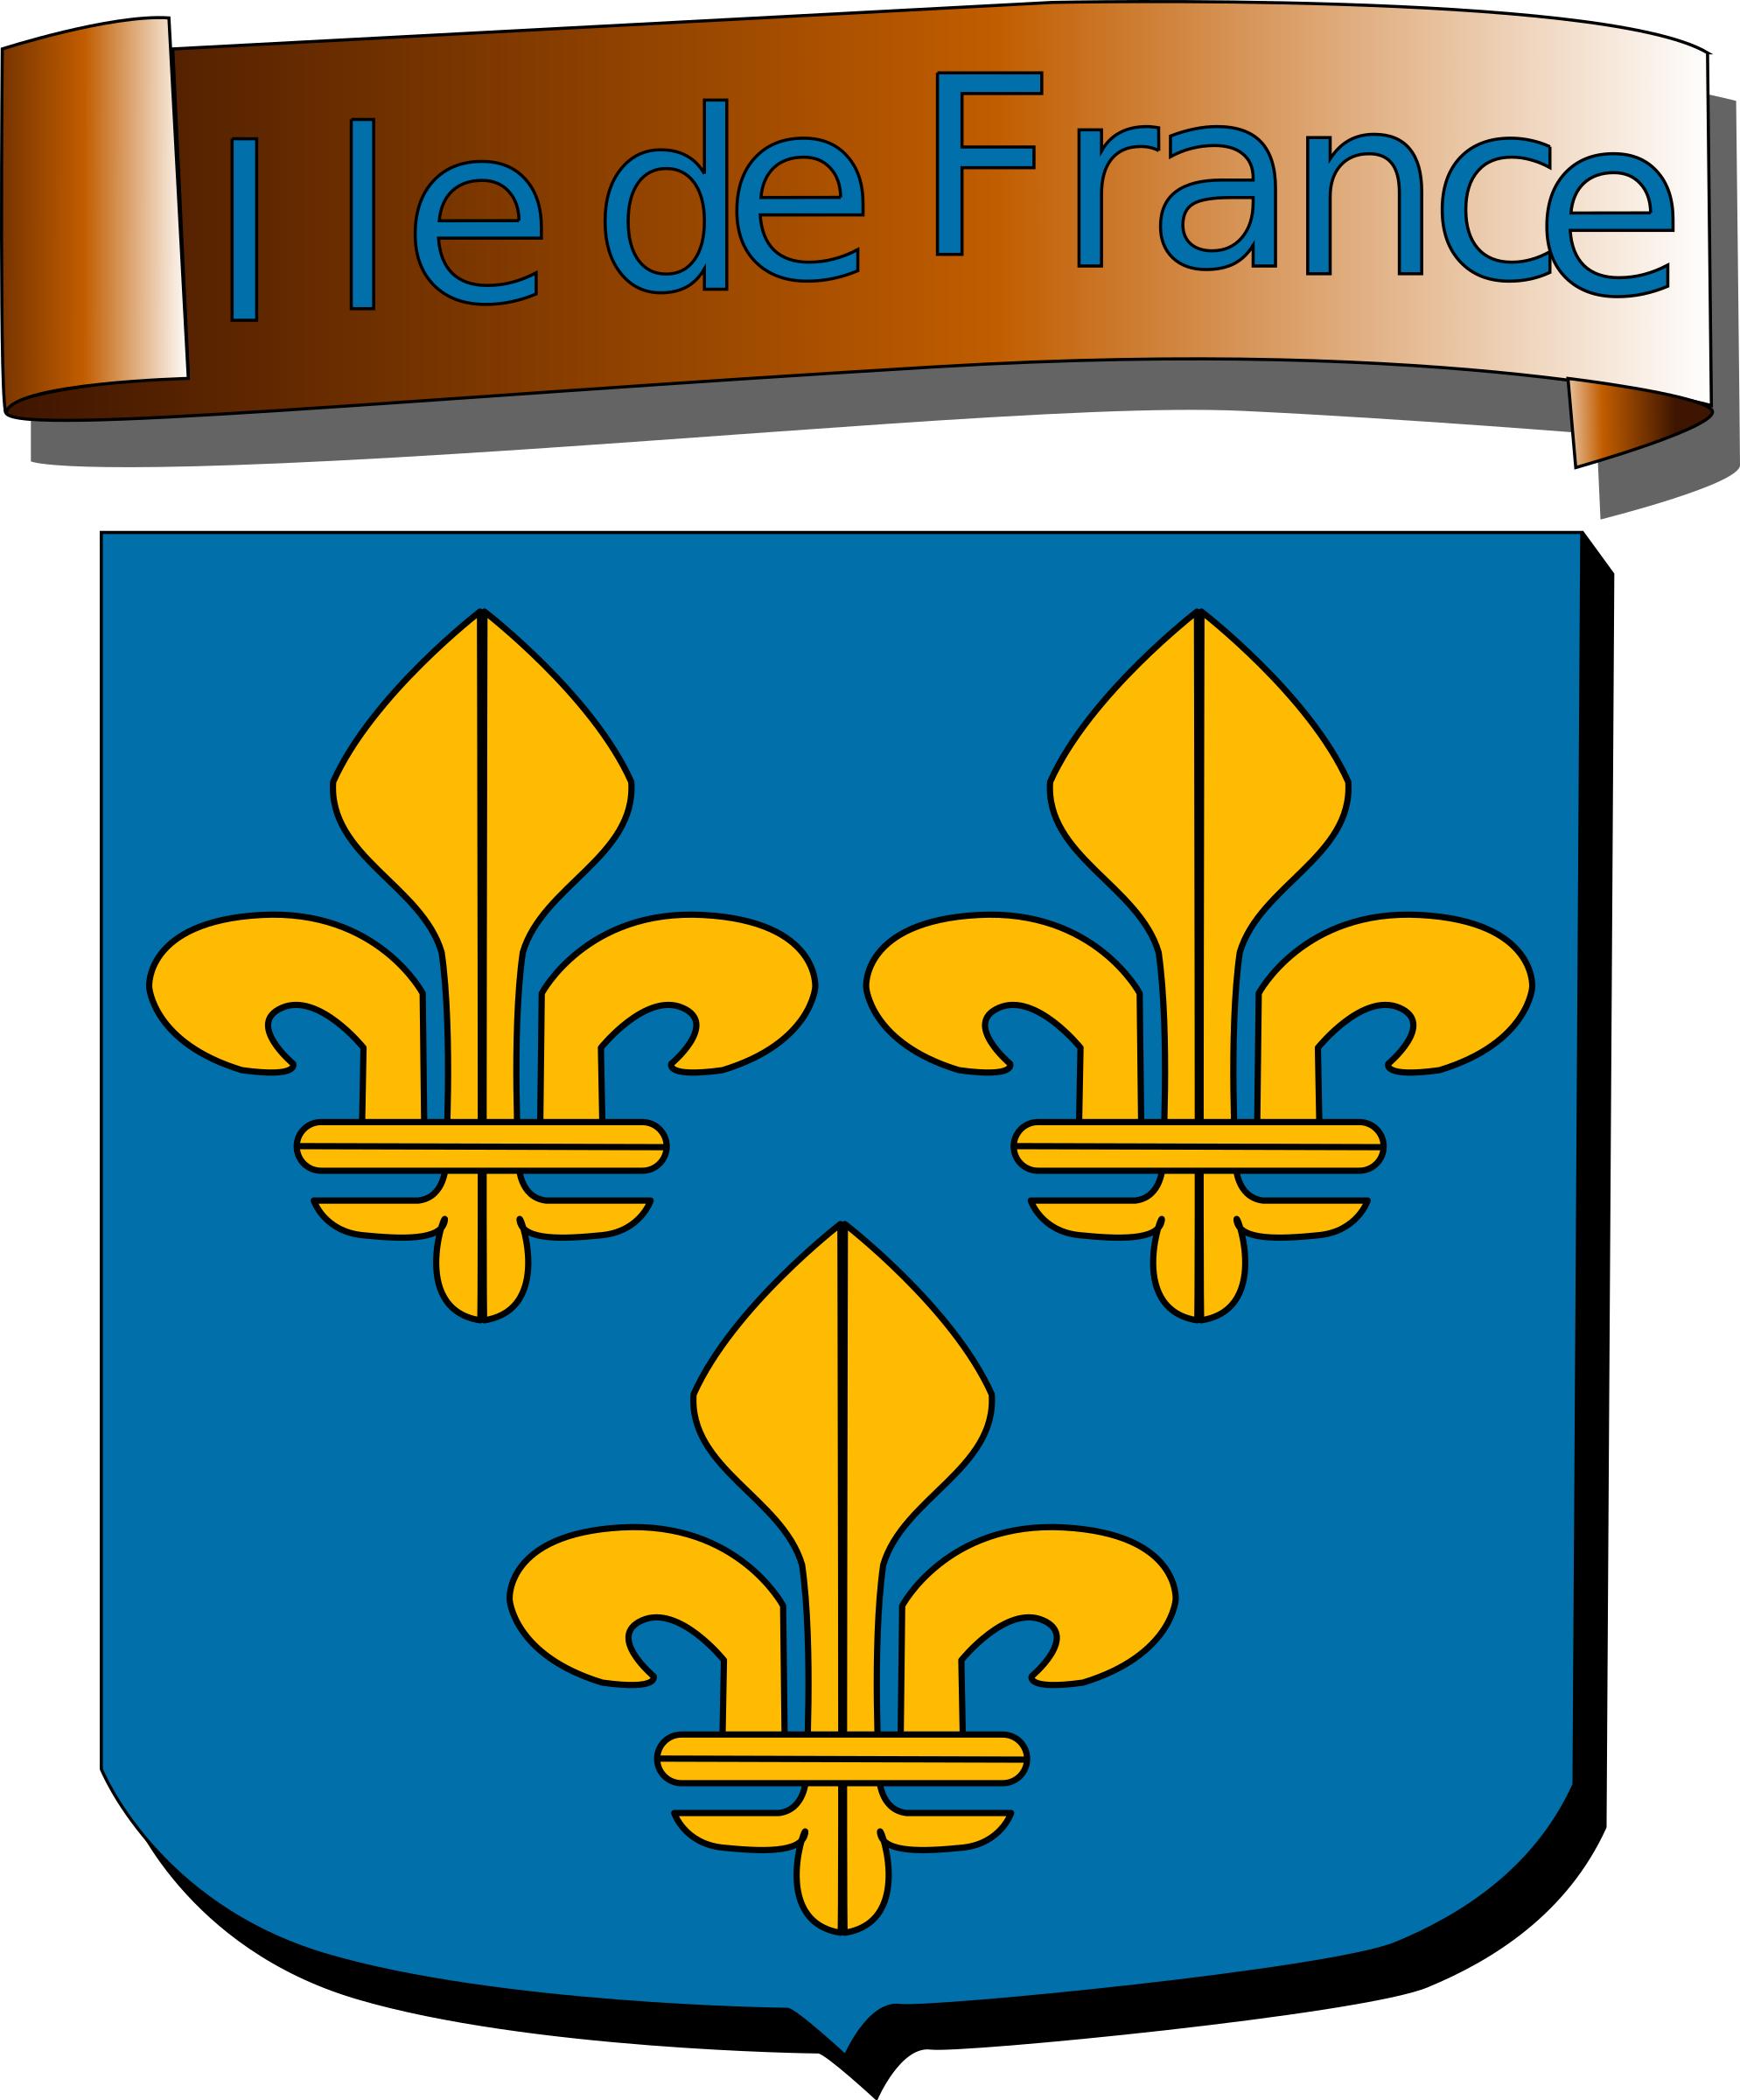 Ile de France - coat of arms png